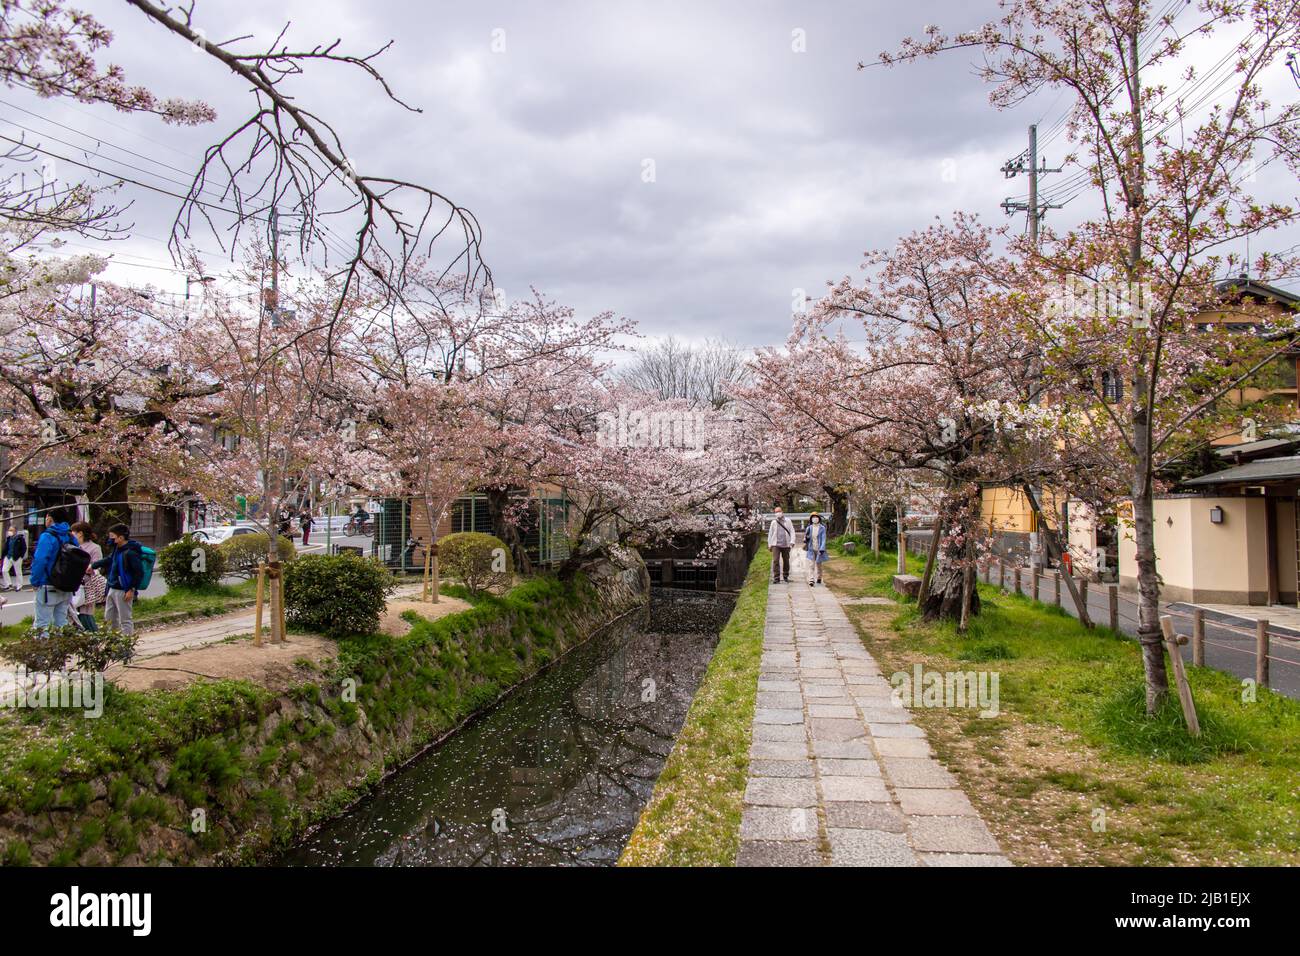 Philosopher's Walk, ein Pfad, der an bewölktem Tag einem von Kirschbäumen gesäumten Kanal (Lake Biwa) folgt. Es ist ein beliebter Ort für Menschen während der Hanami-Saison. Stockfoto